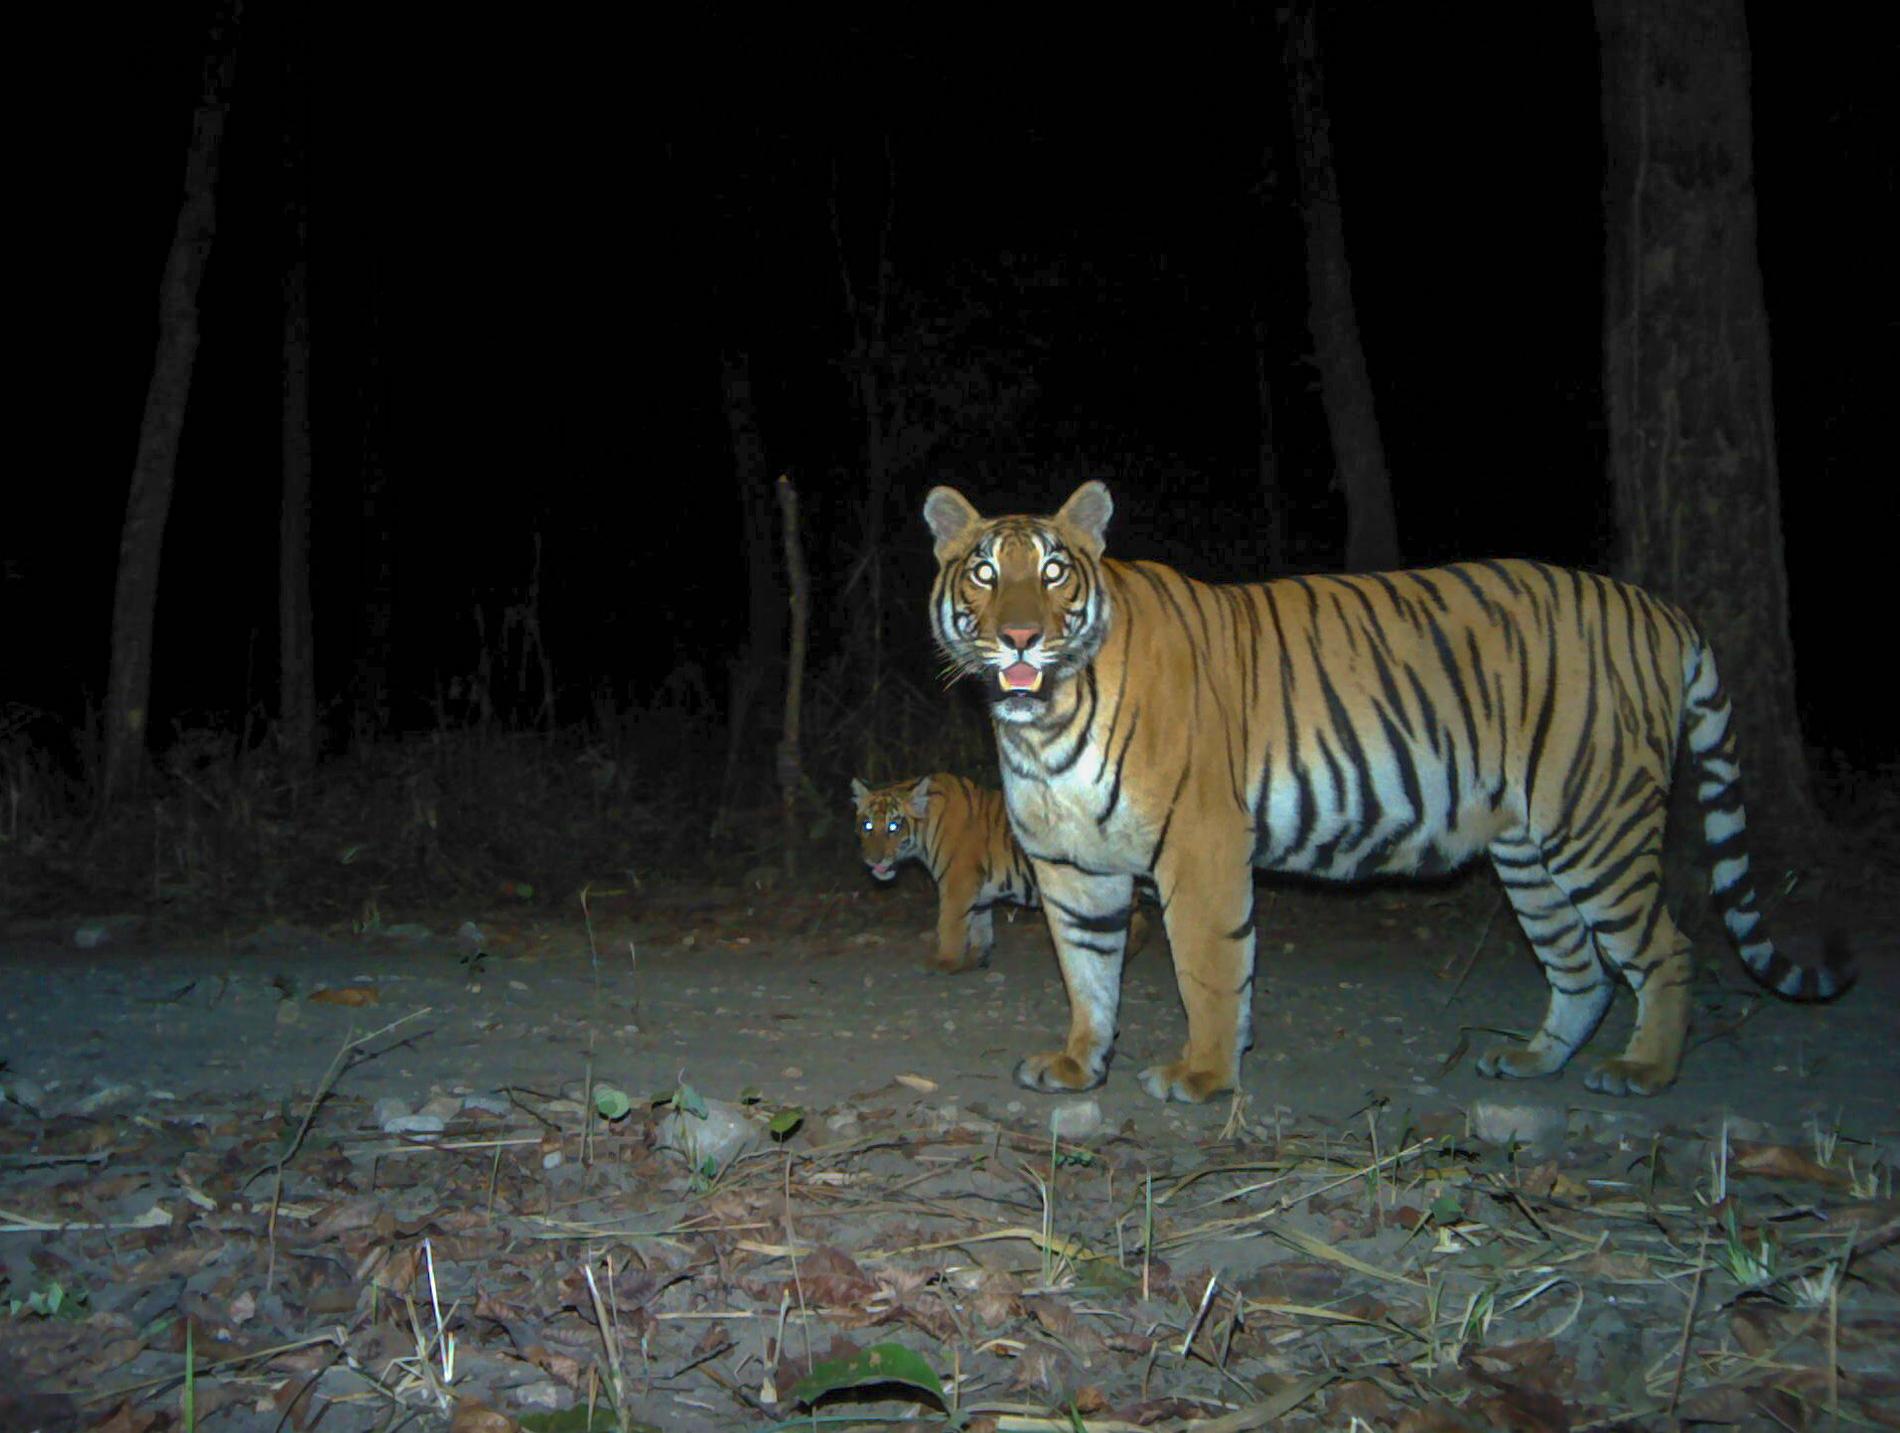 Tigrarna har ökat kraftigt i antal i Nepal i Sydasien. Tigrarna på bilden, en hona med unge, är fotograferade i kamerafälla i nationalparken Parsa.